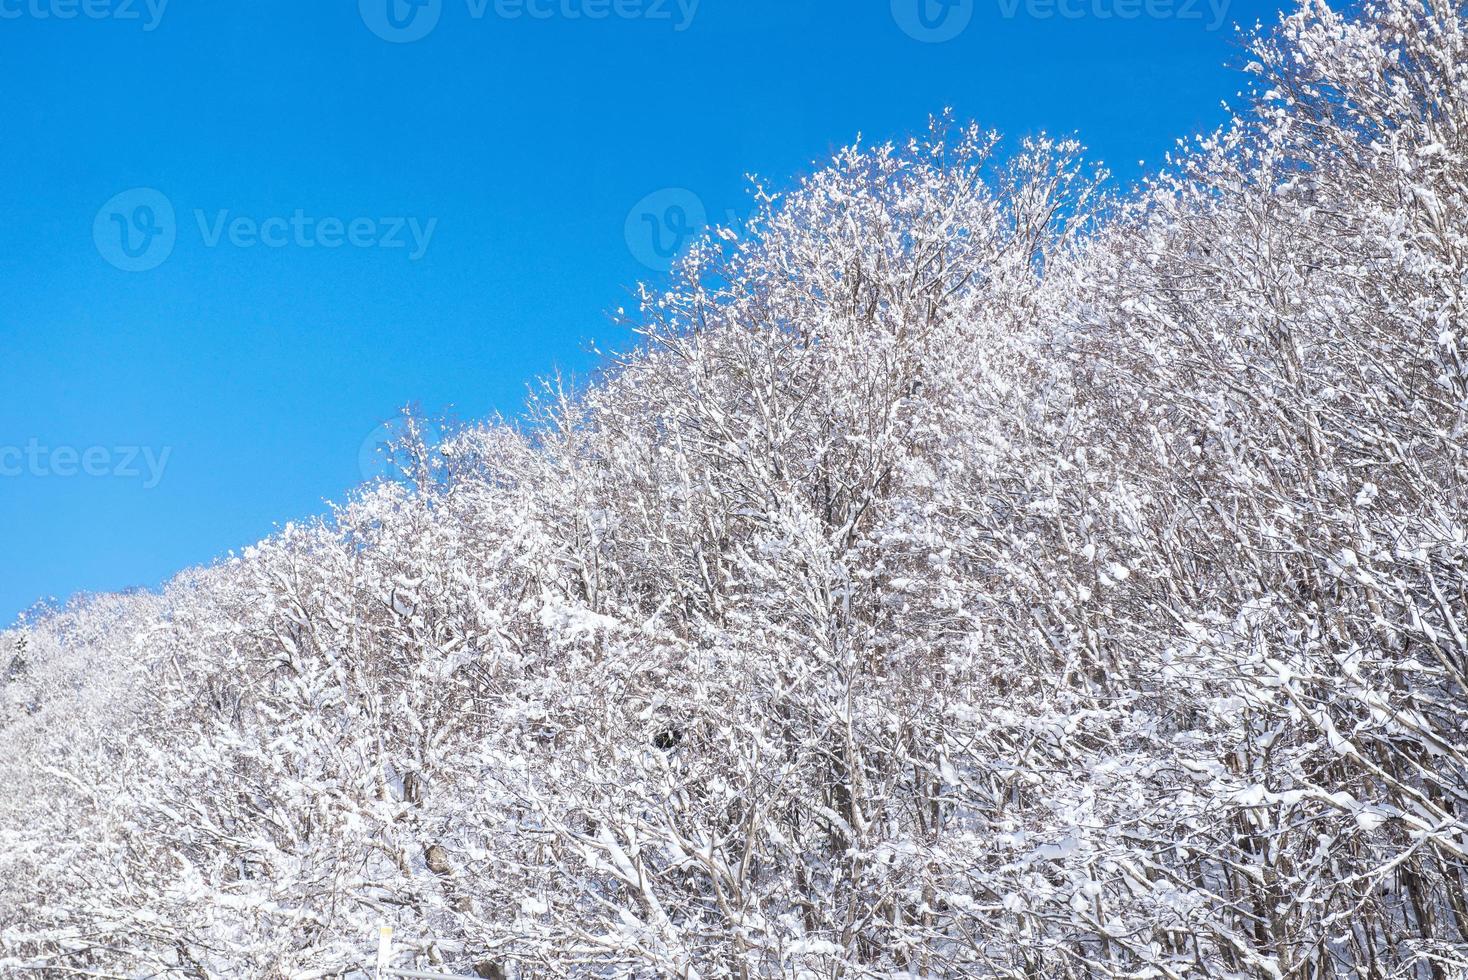 poeder sneeuw berg in sapporo, hokkaido Japan foto